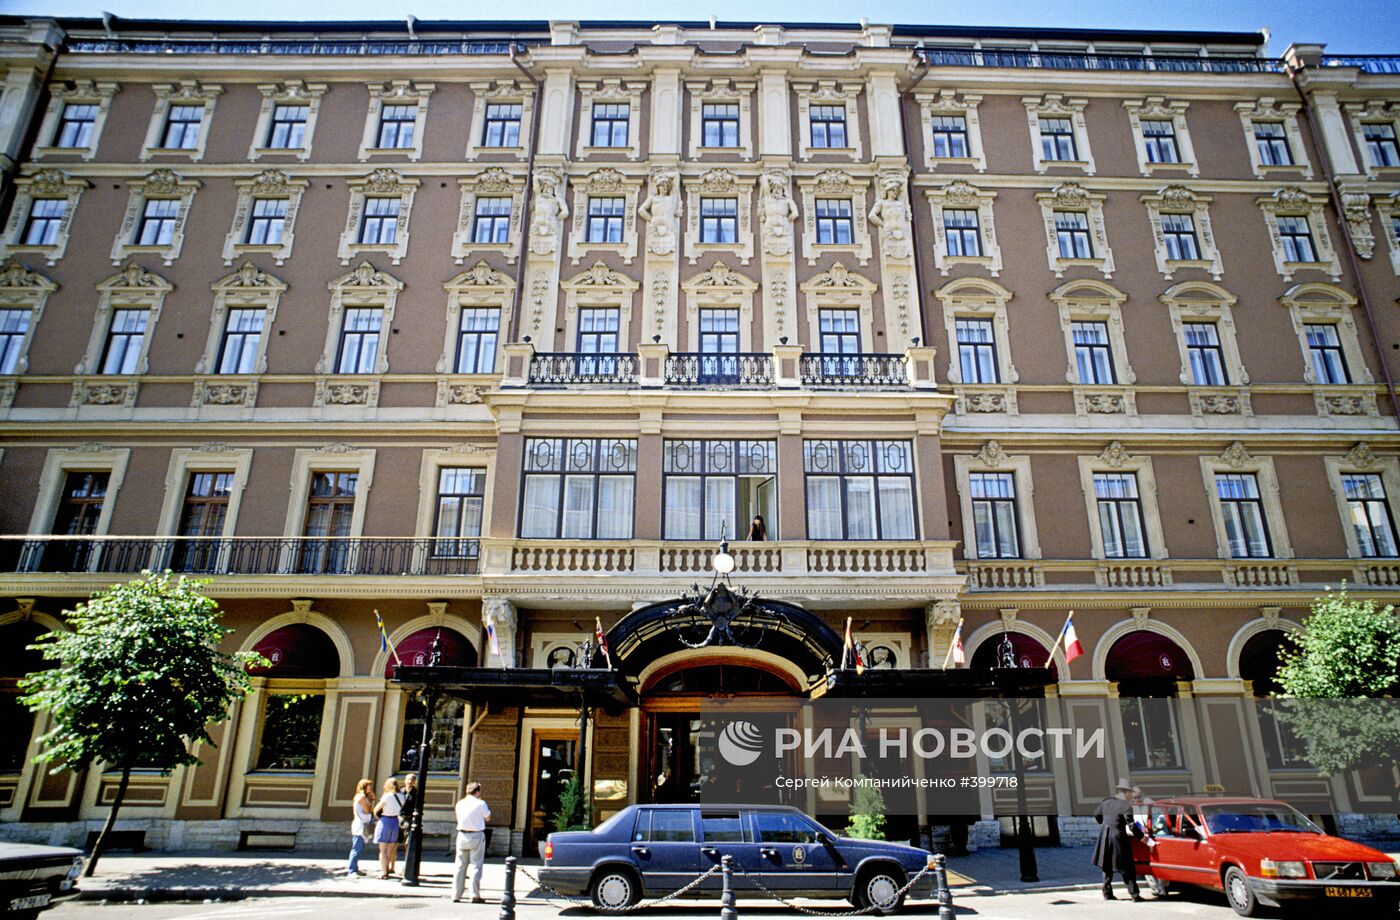 Гранд-отель "Европа" в Санкт-Петербурге